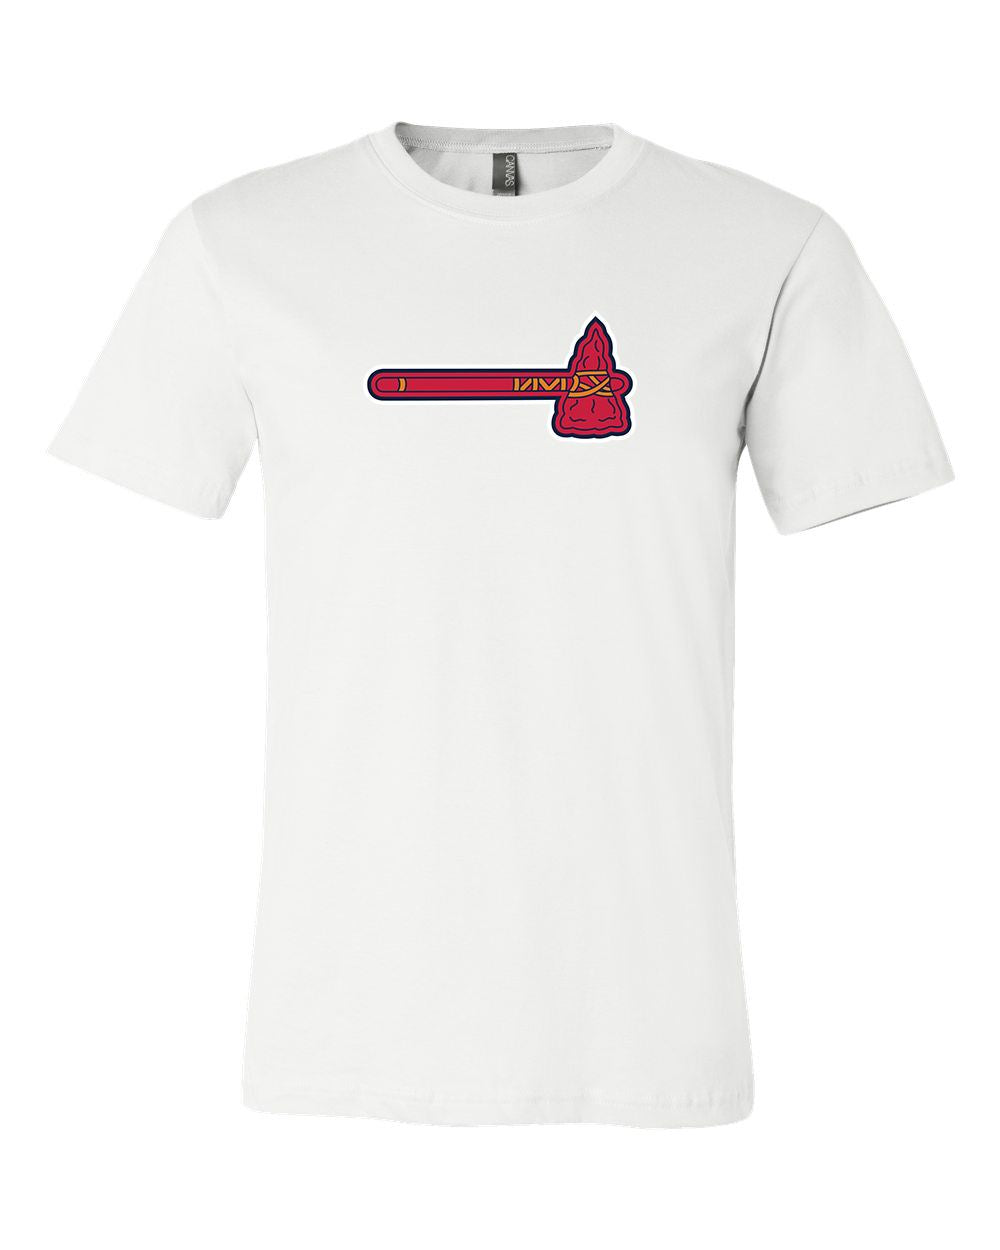 Atlanta Braves T-Shirt